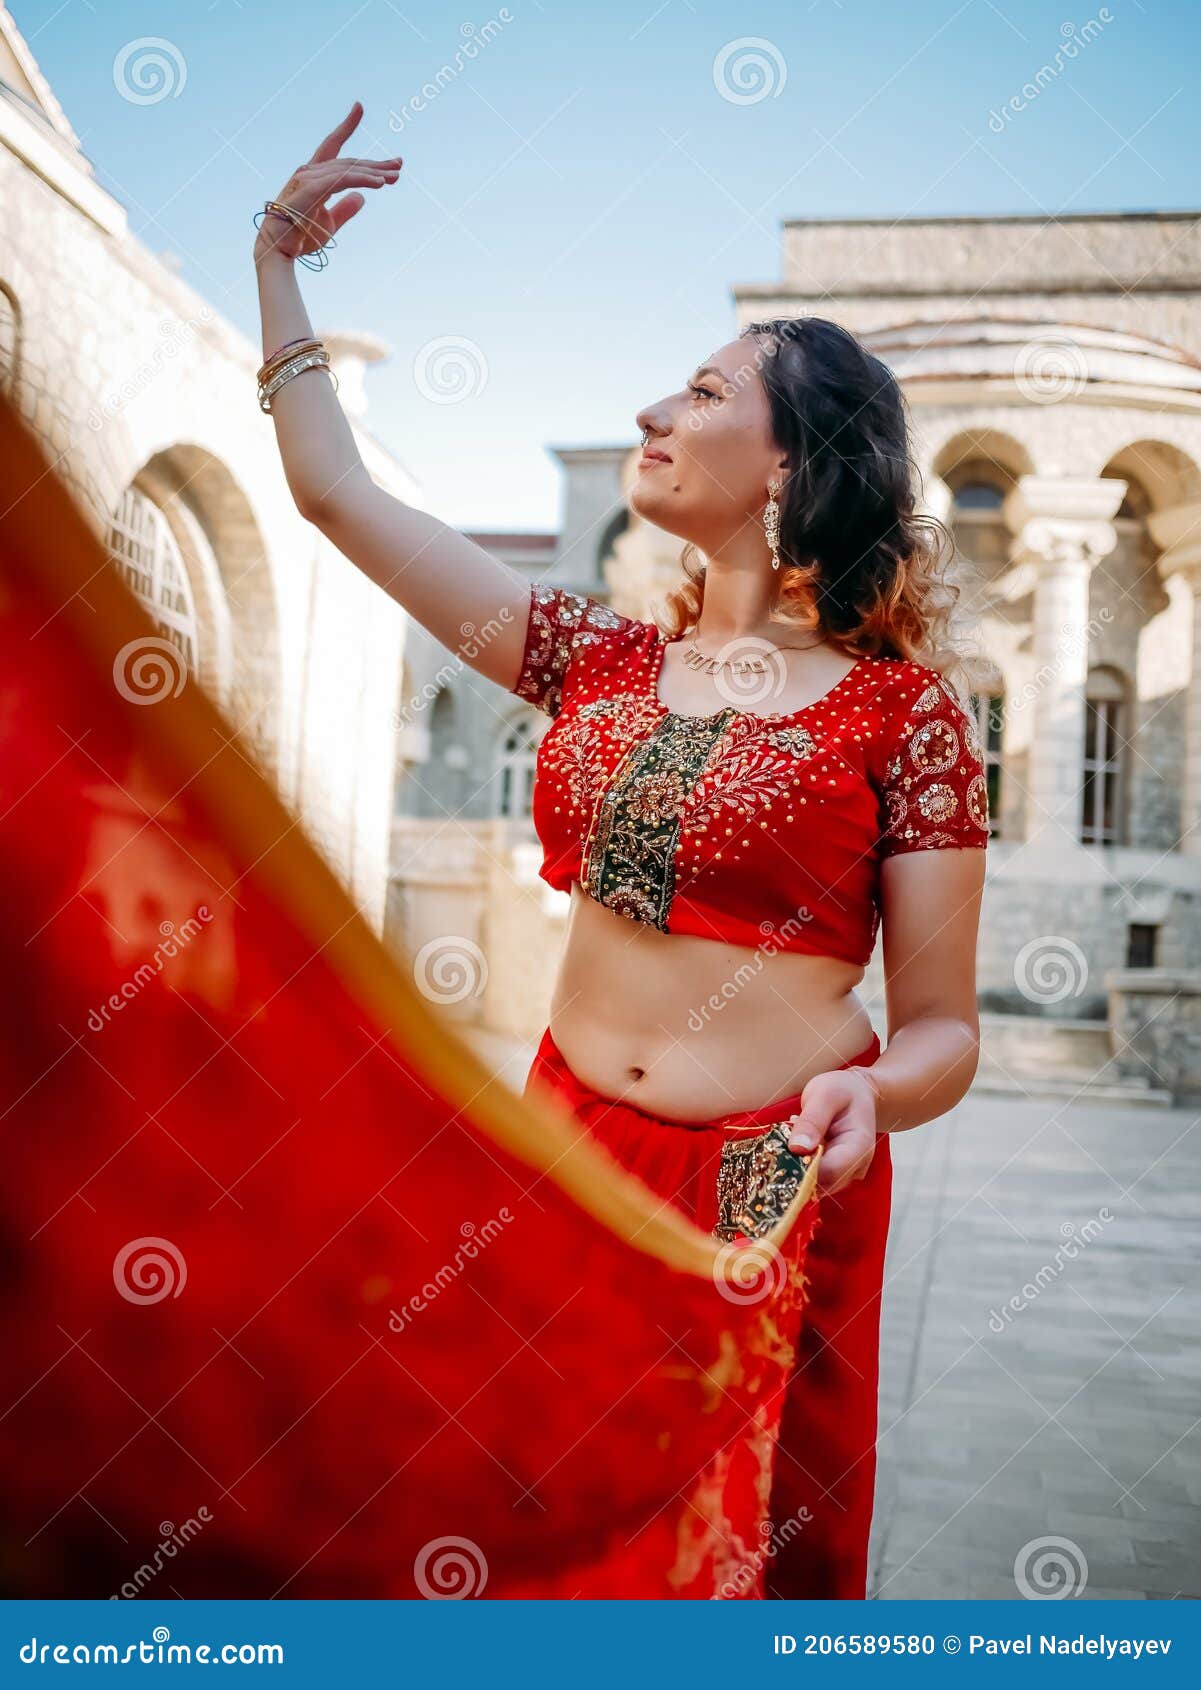 https://thumbs.dreamstime.com/z/bello-saree-%C3%A9tnico-indio-mujer-joven-en-una-boda-sensual-roja-y-colorida-un-sari-muy-femenino-posando-sobre-vieja-vestimenta-206589580.jpg